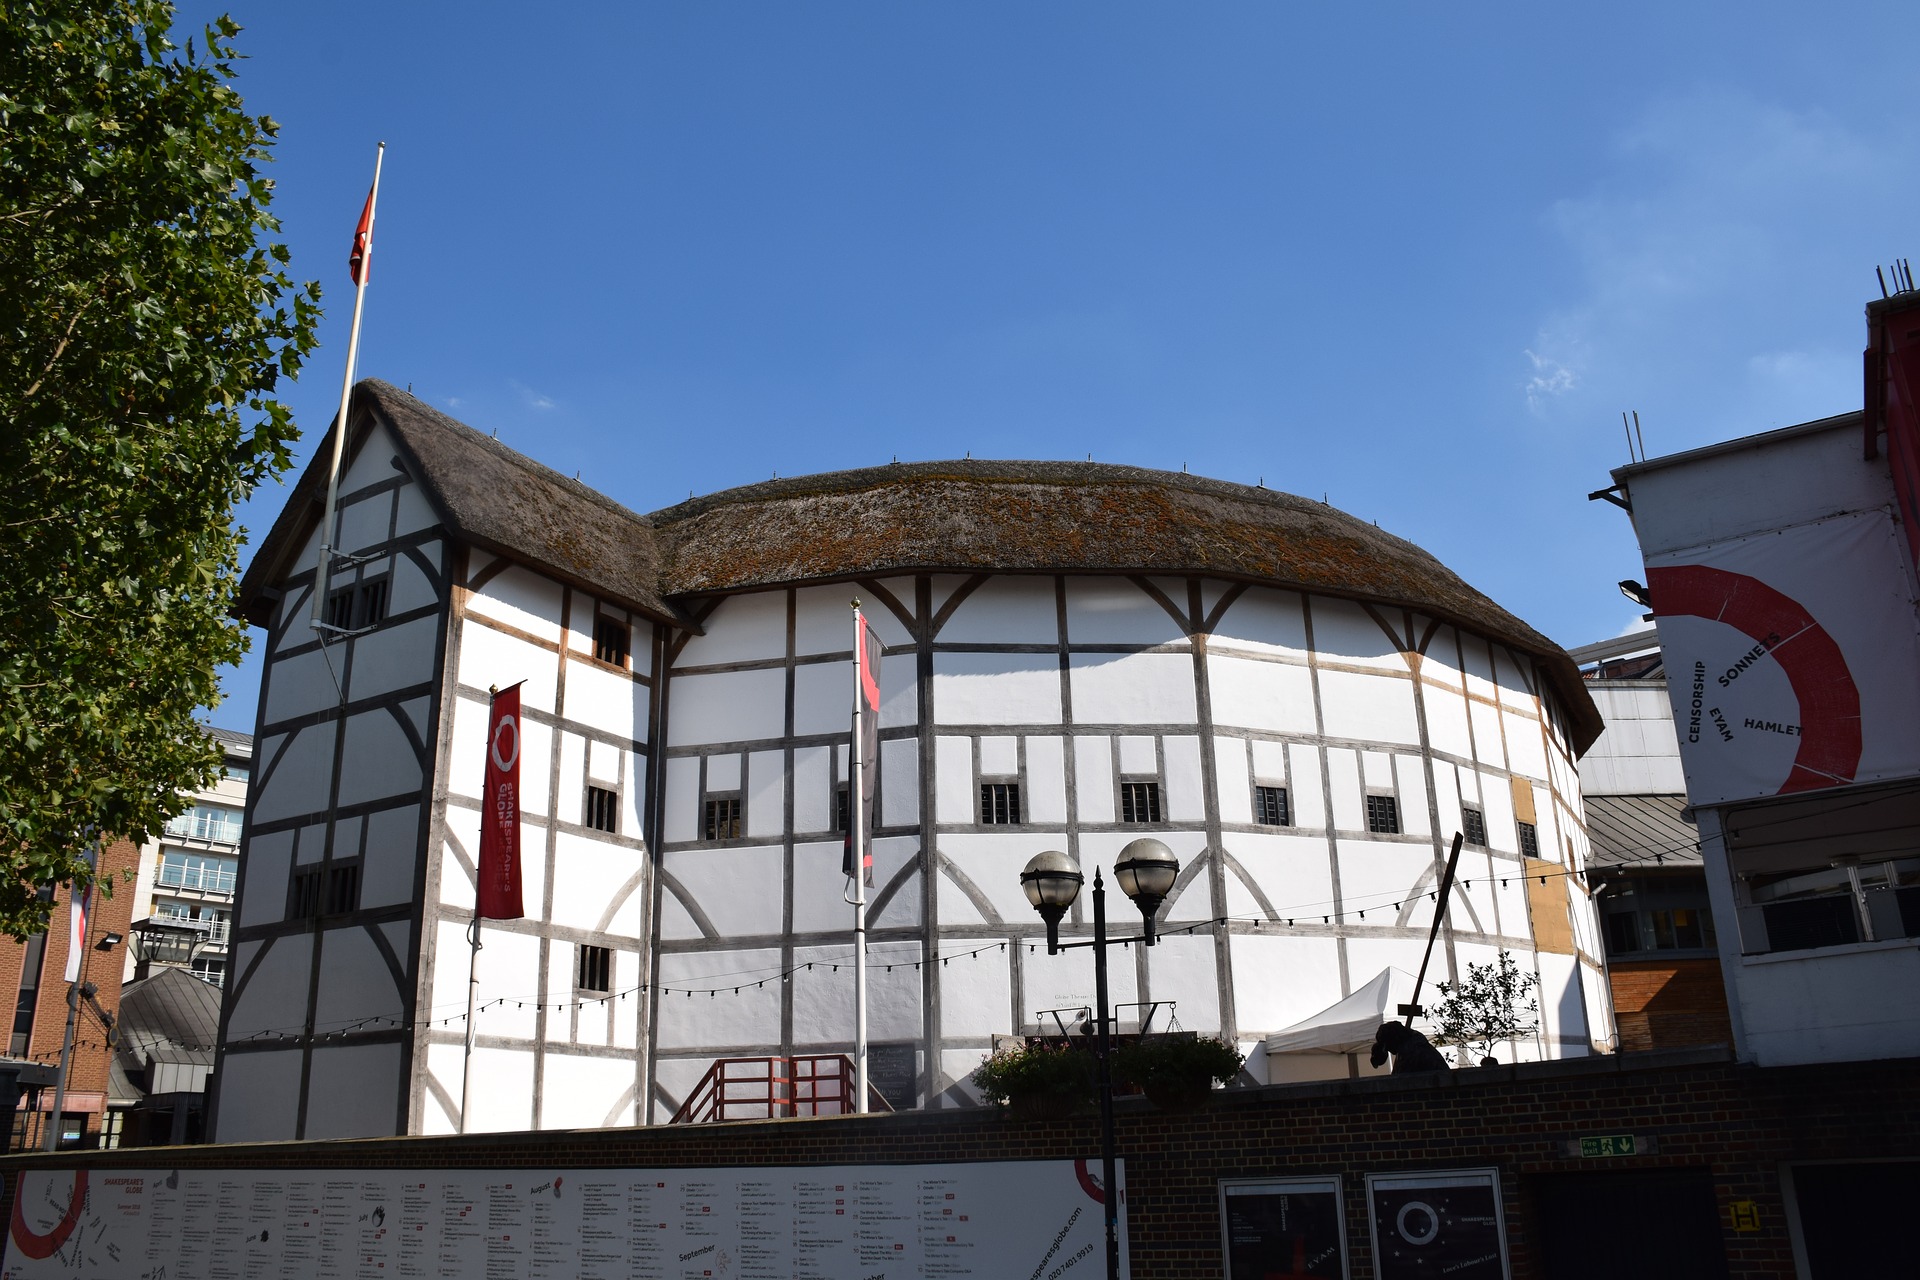 Shakespeare-globe-theatre-london-UK